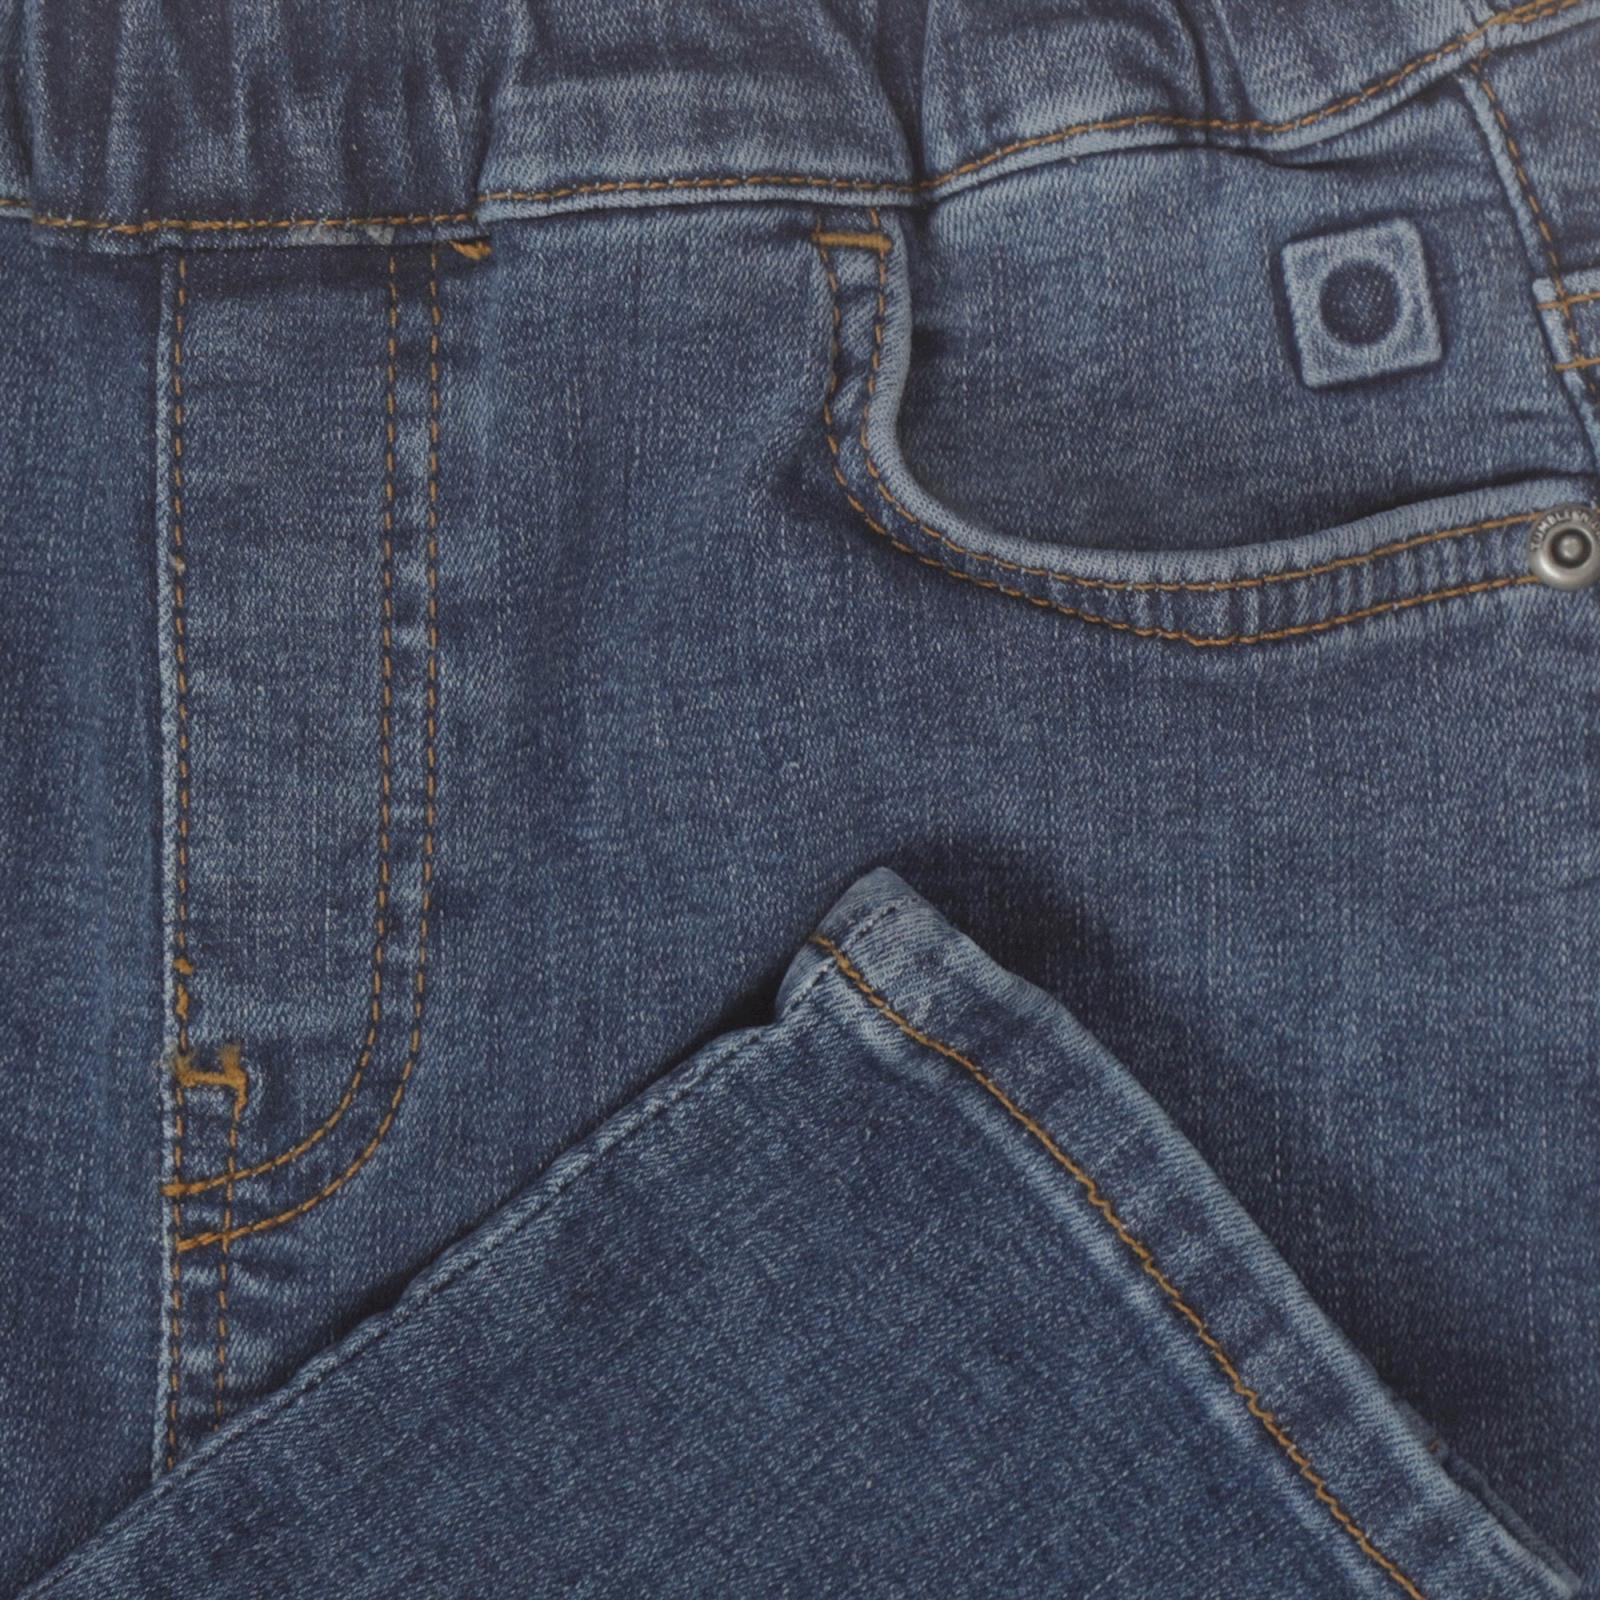 Jamie baggy Jeans  Mid -Tumble 'N Dry